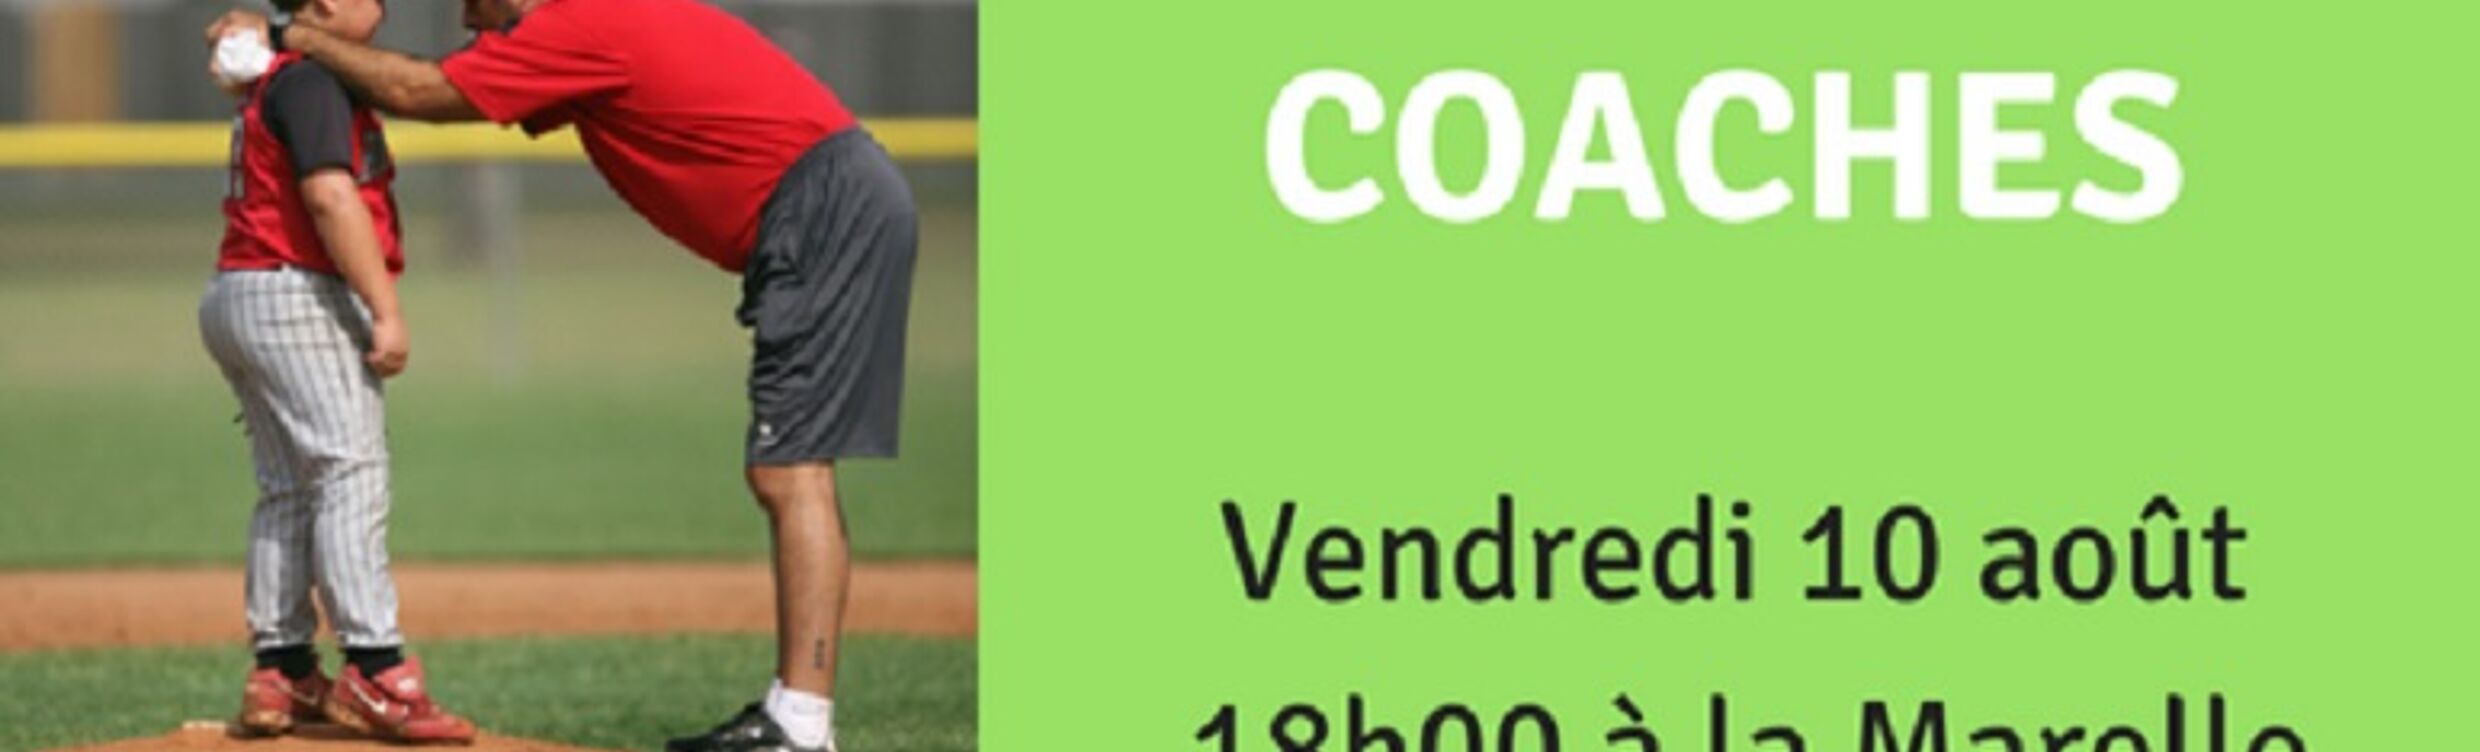 Soiree_des_coaches2.jpg